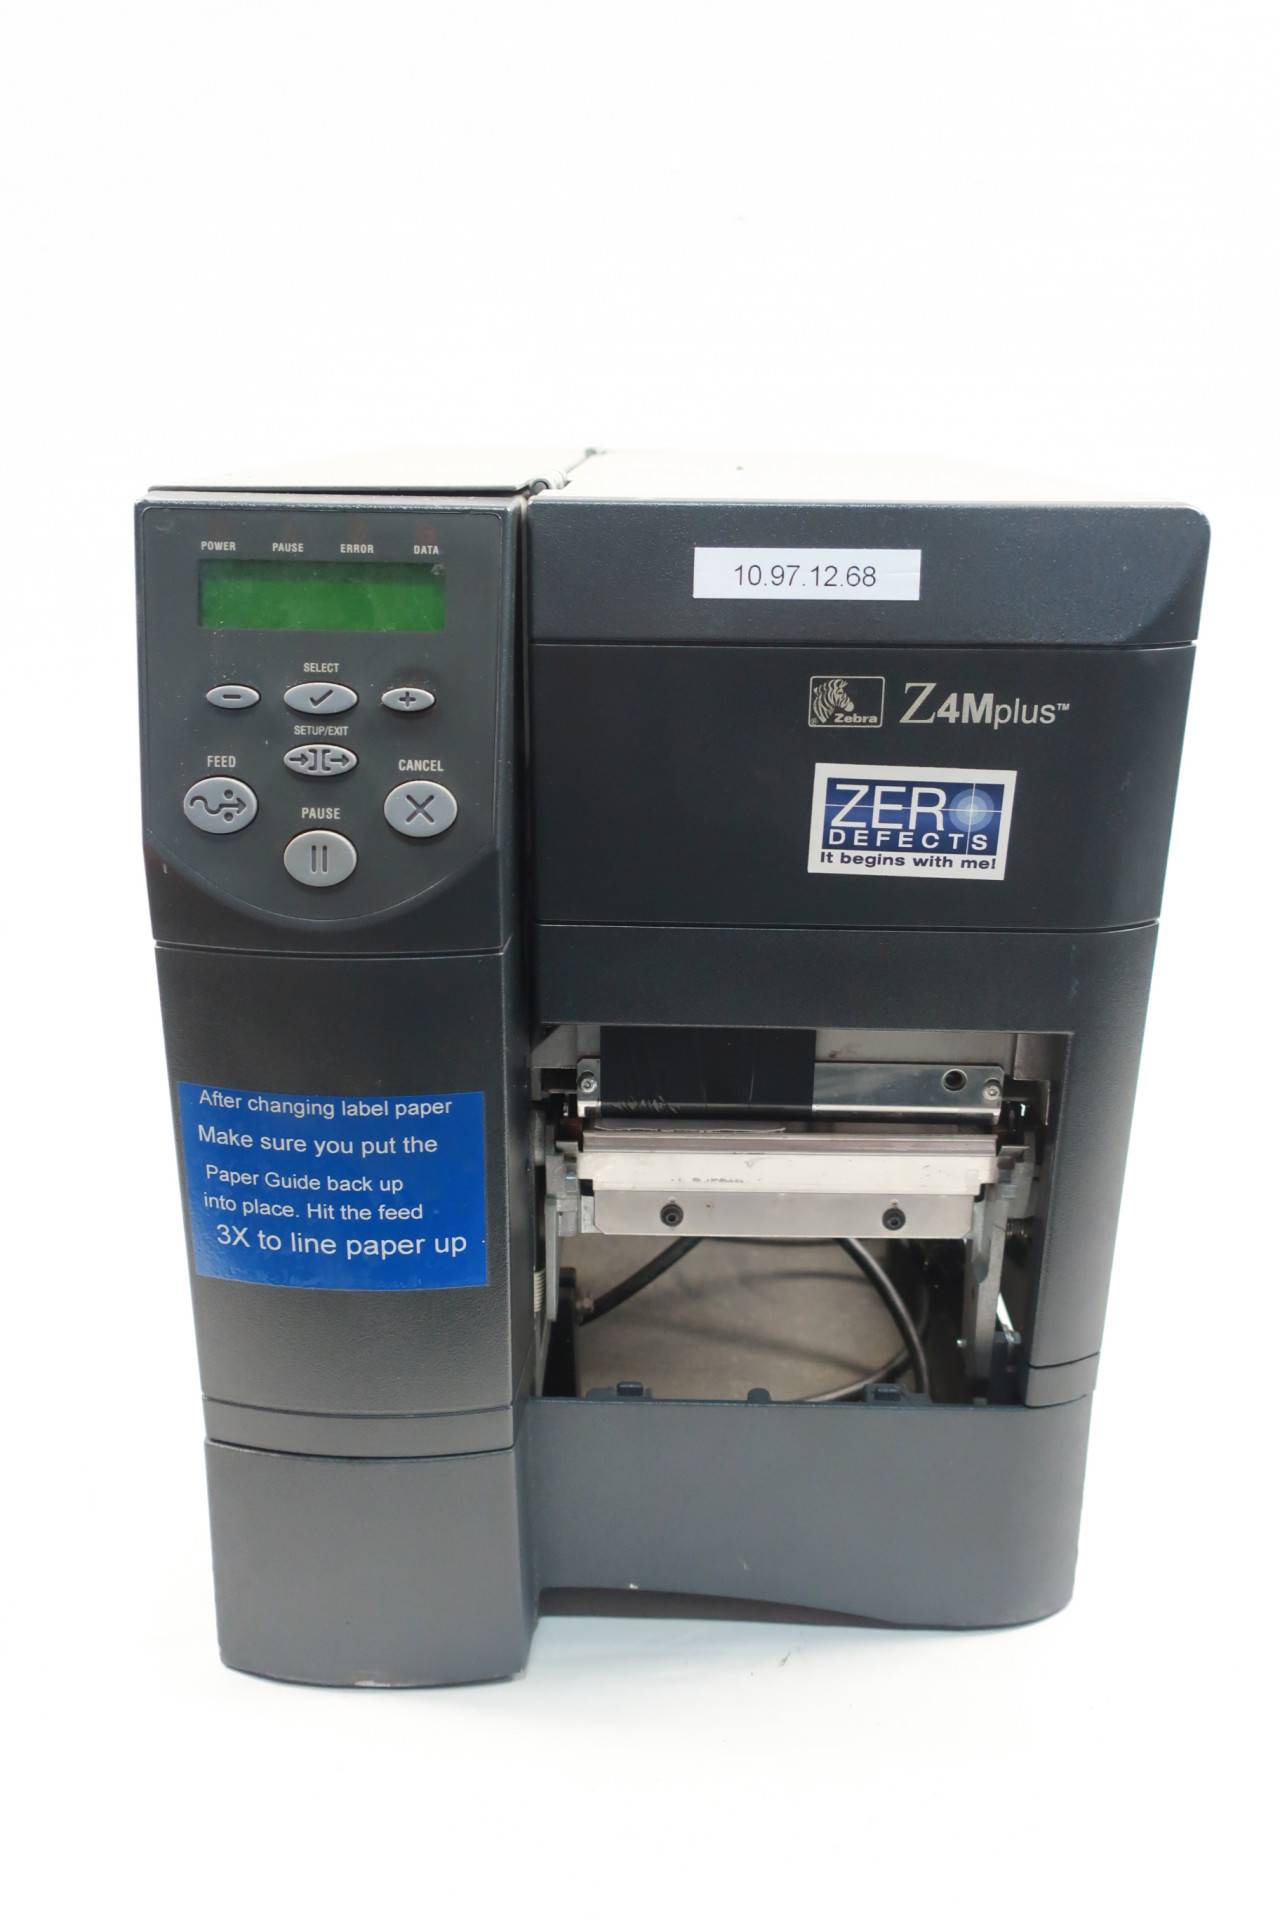 Zebra Z4m00 3001 0020 Z4m Plus Thermal Label Printer 90 264v Ac 2333